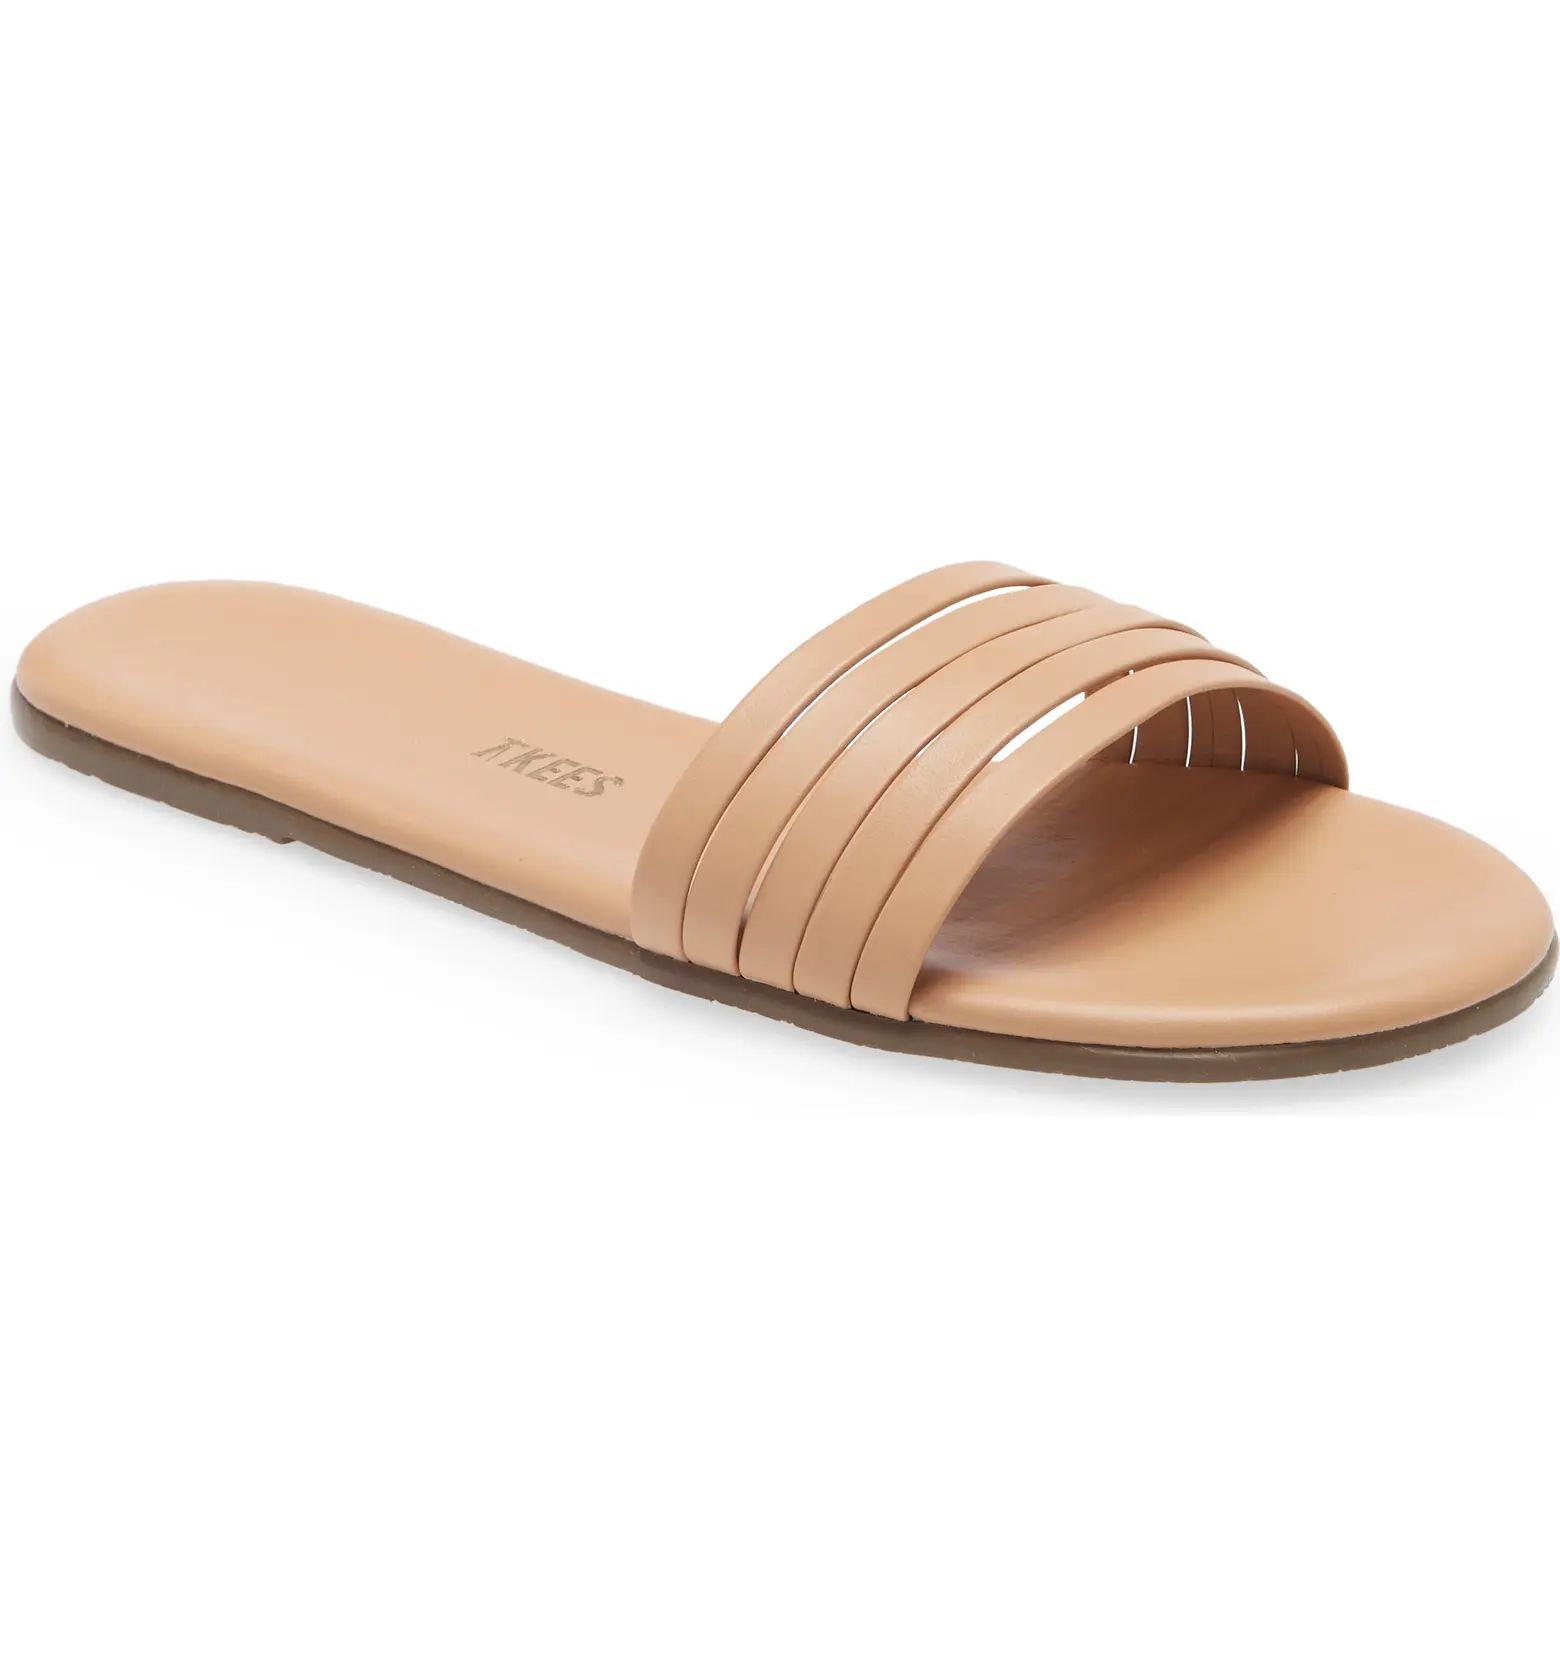 Austyn Slide SandalTKEES | Nordstrom